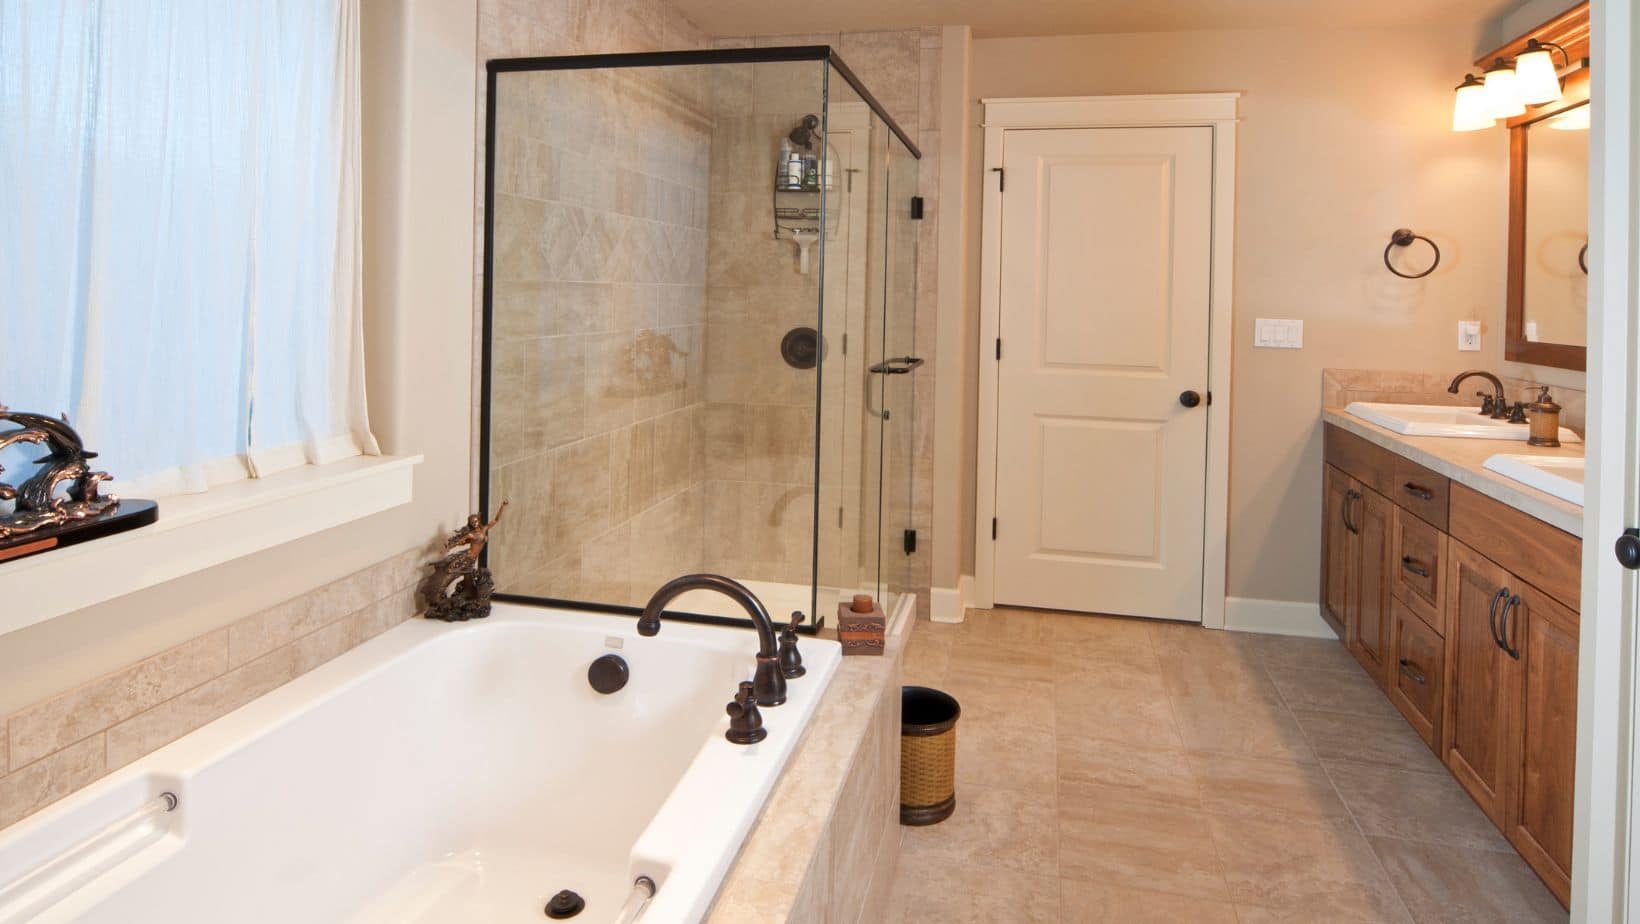 Elegant bathroom style with wood bathroom cabinets, bath tub and shower